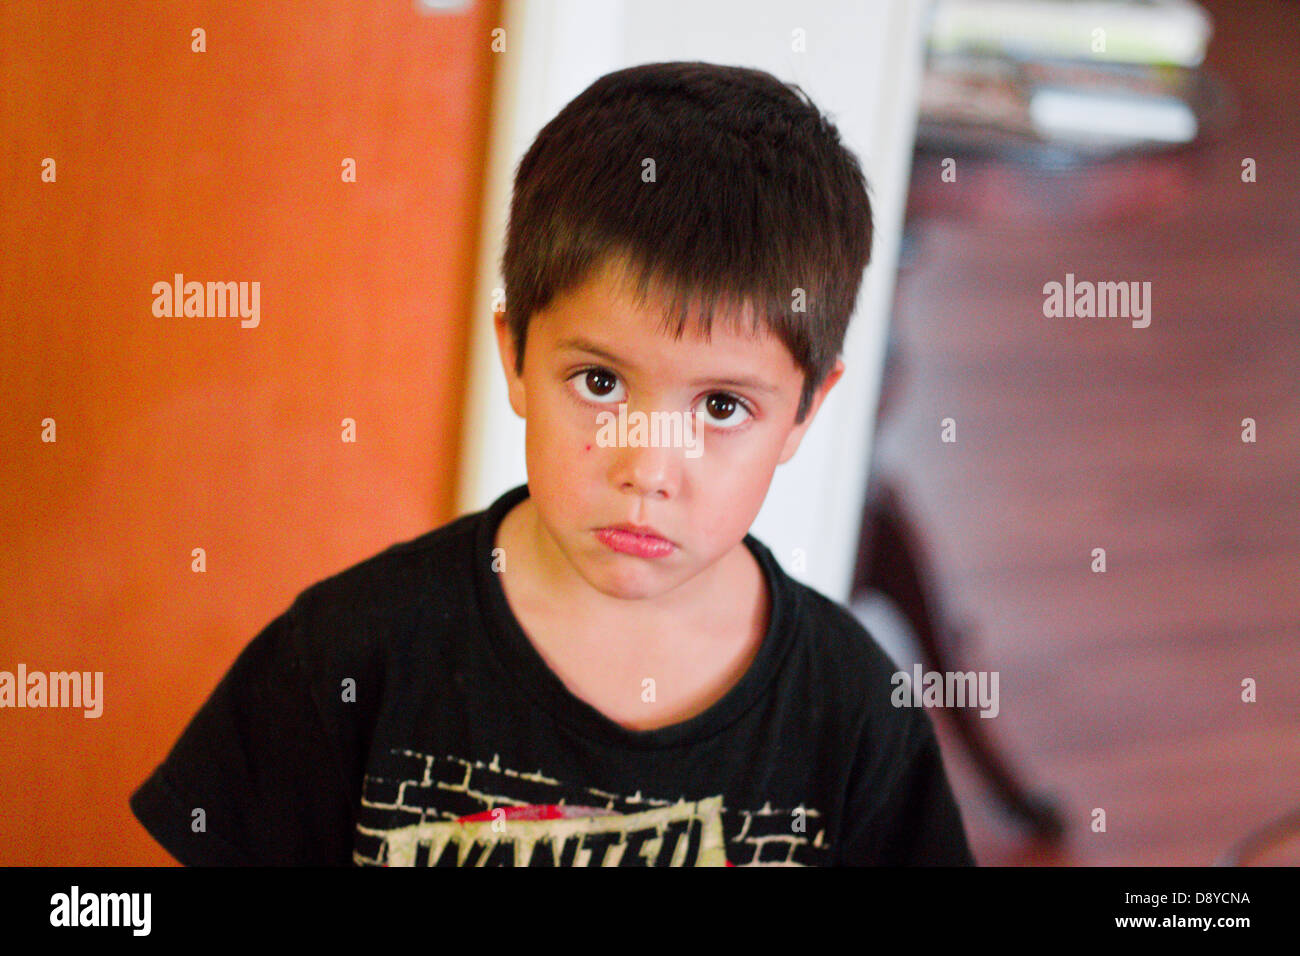 Kleiner Junge sucht traurig und verärgert mit Kratzern oder Schnitt im Gesicht Stockfoto